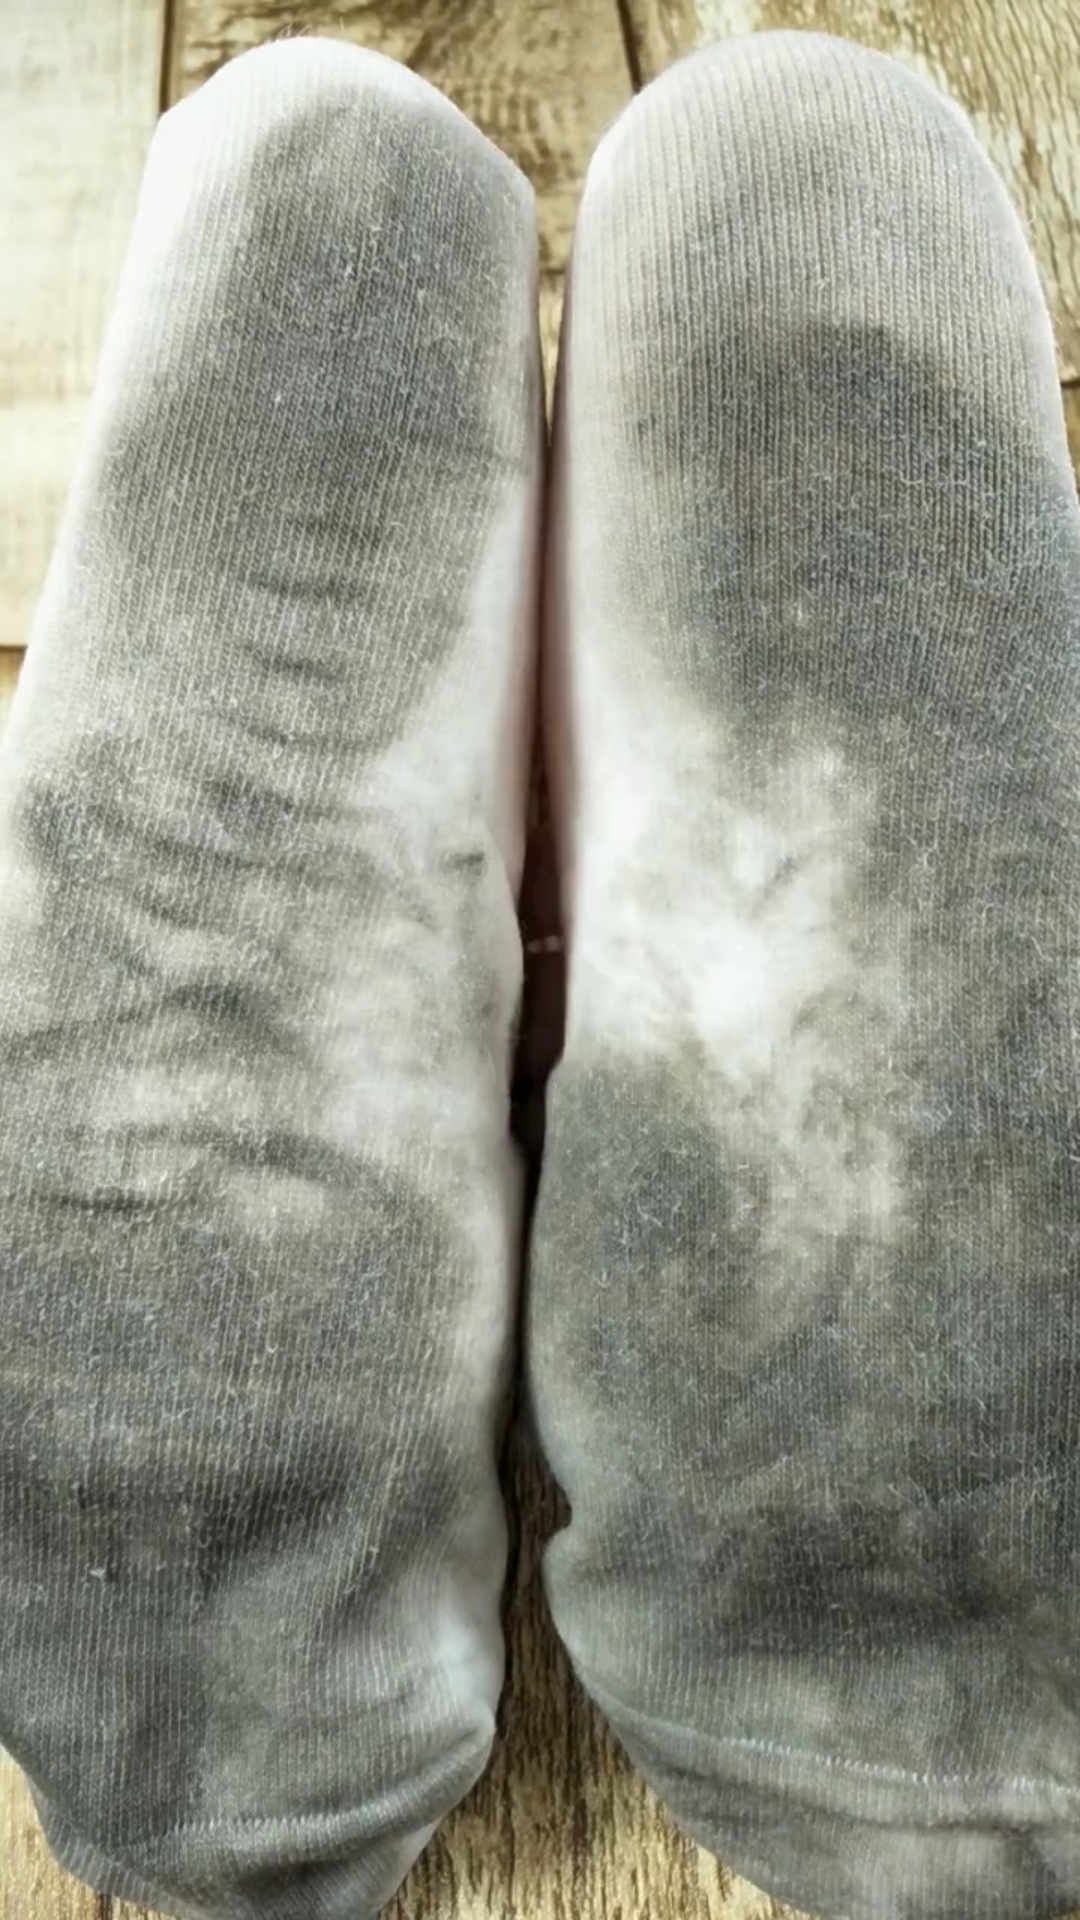 世界上最脏的袜子图片